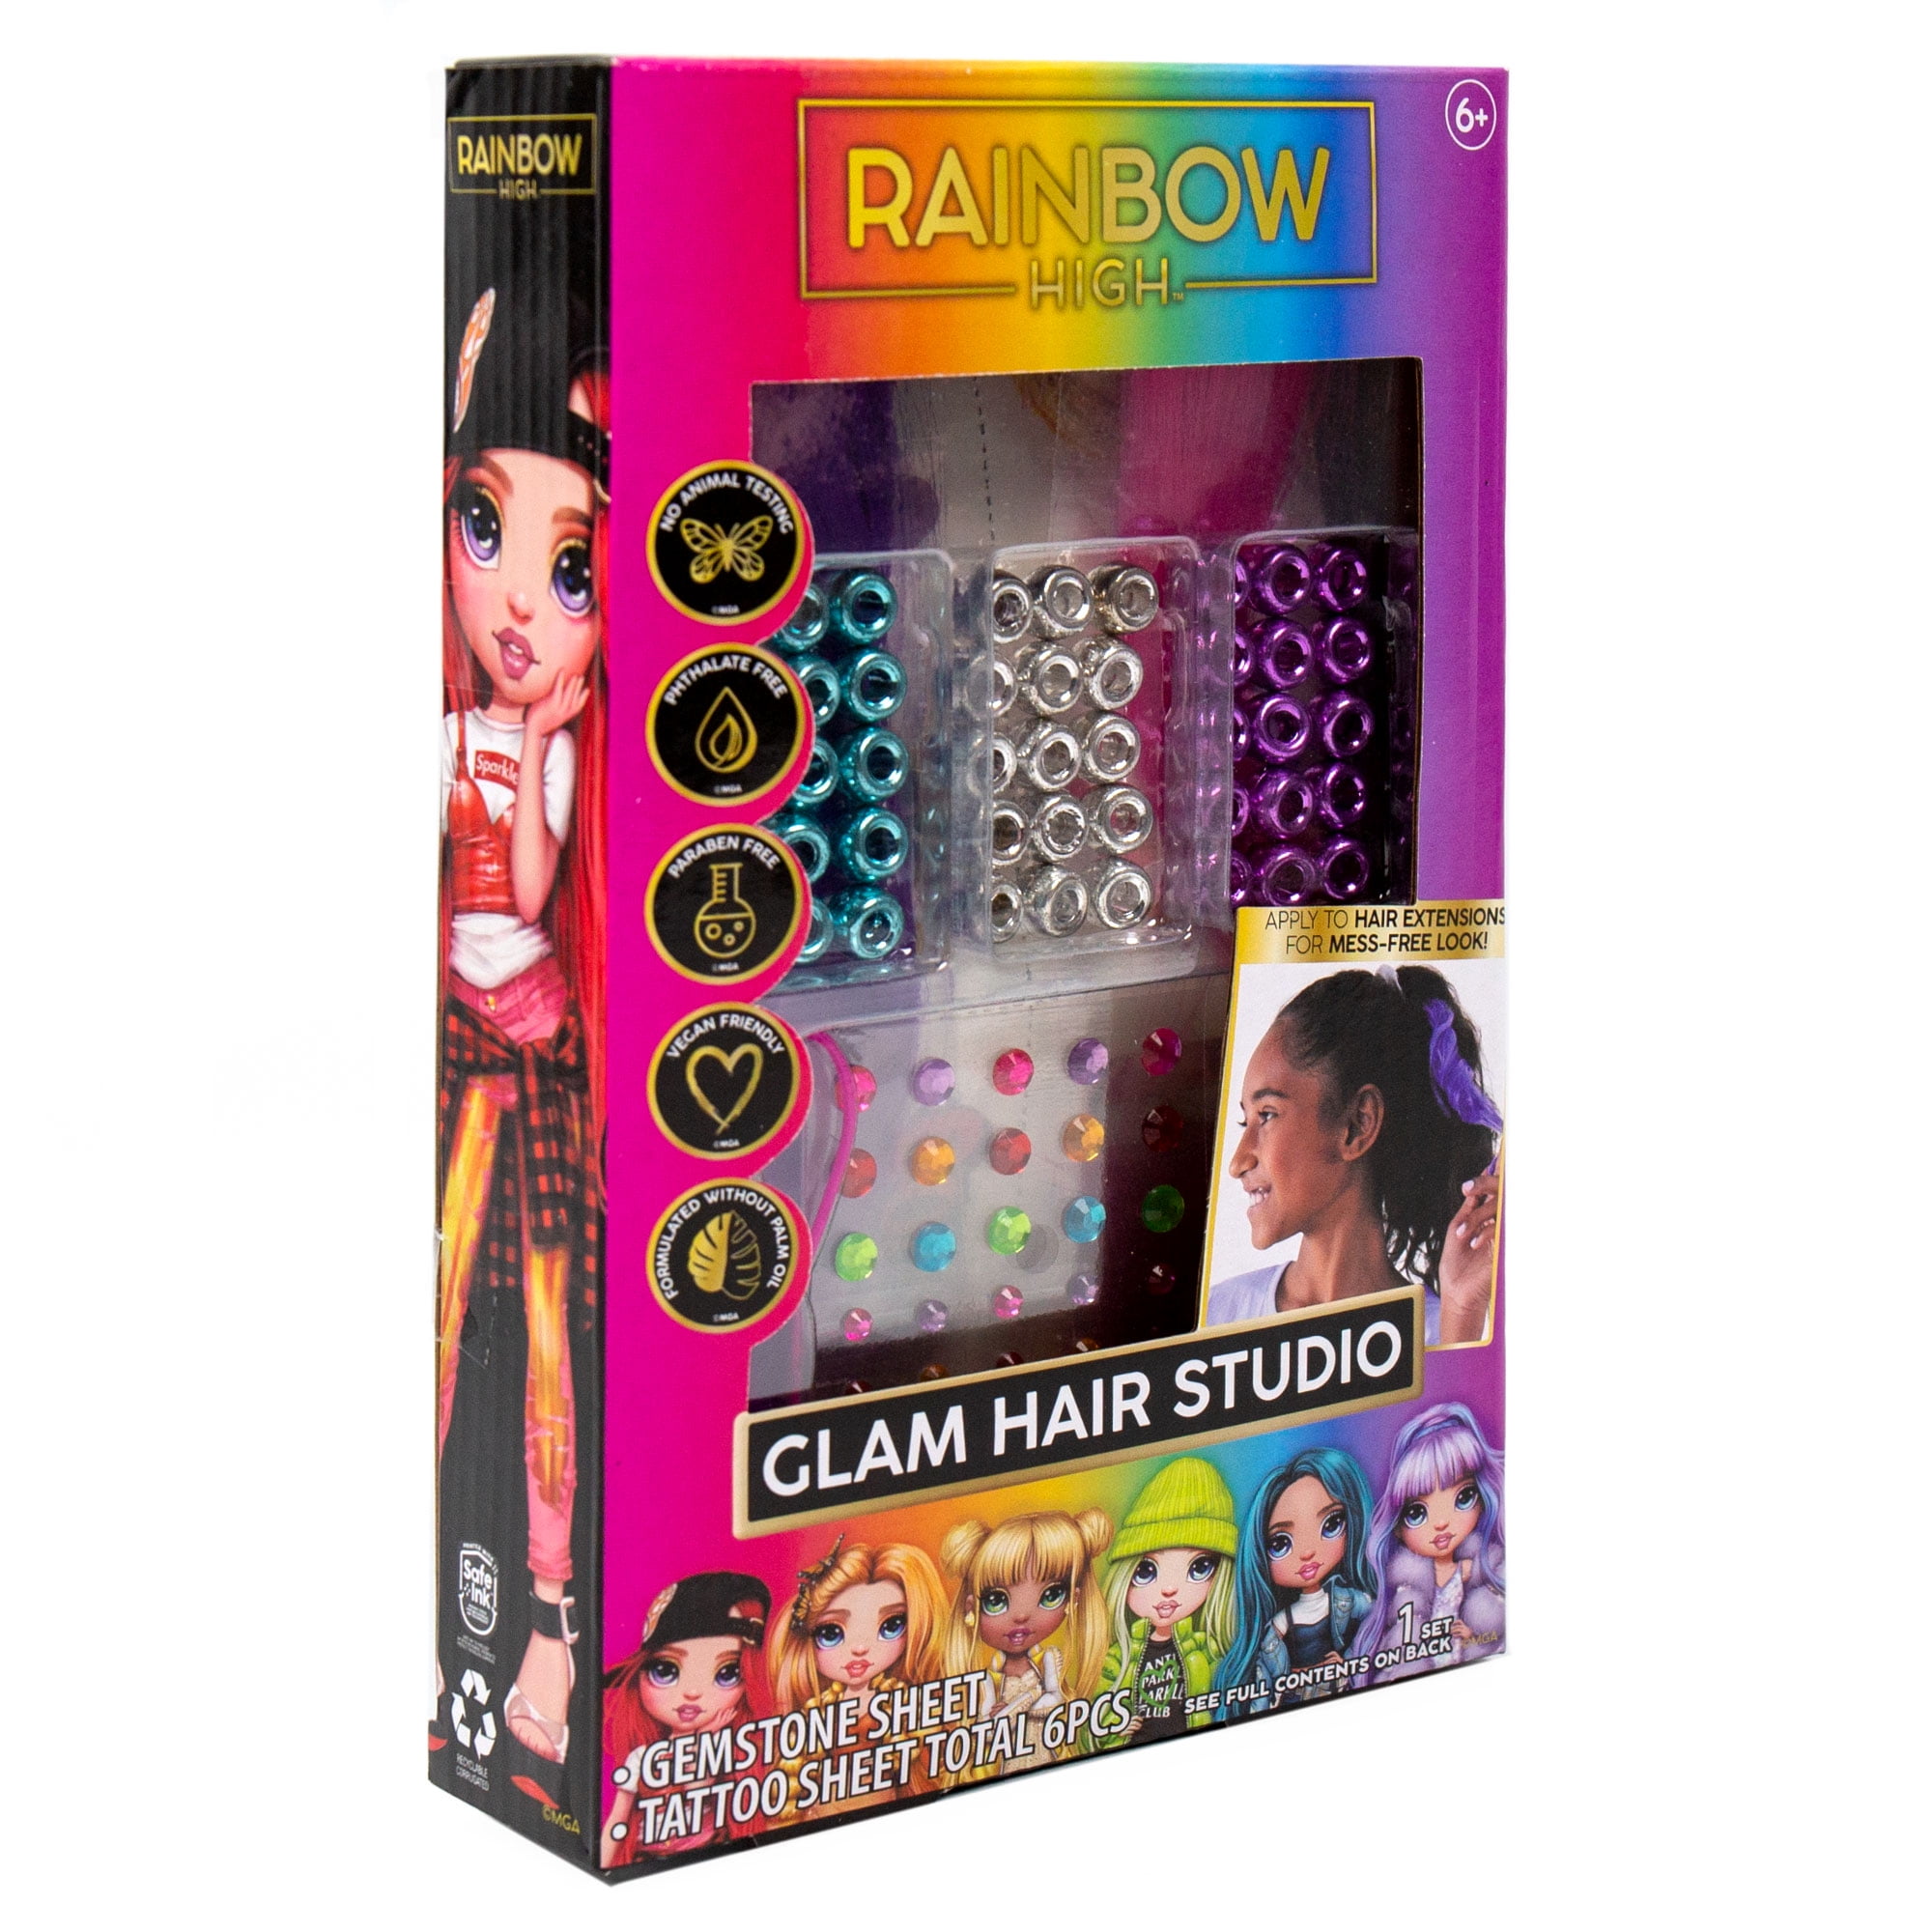 Rainbow High Hair Studio – Create Rainbow Hair with Exclusive